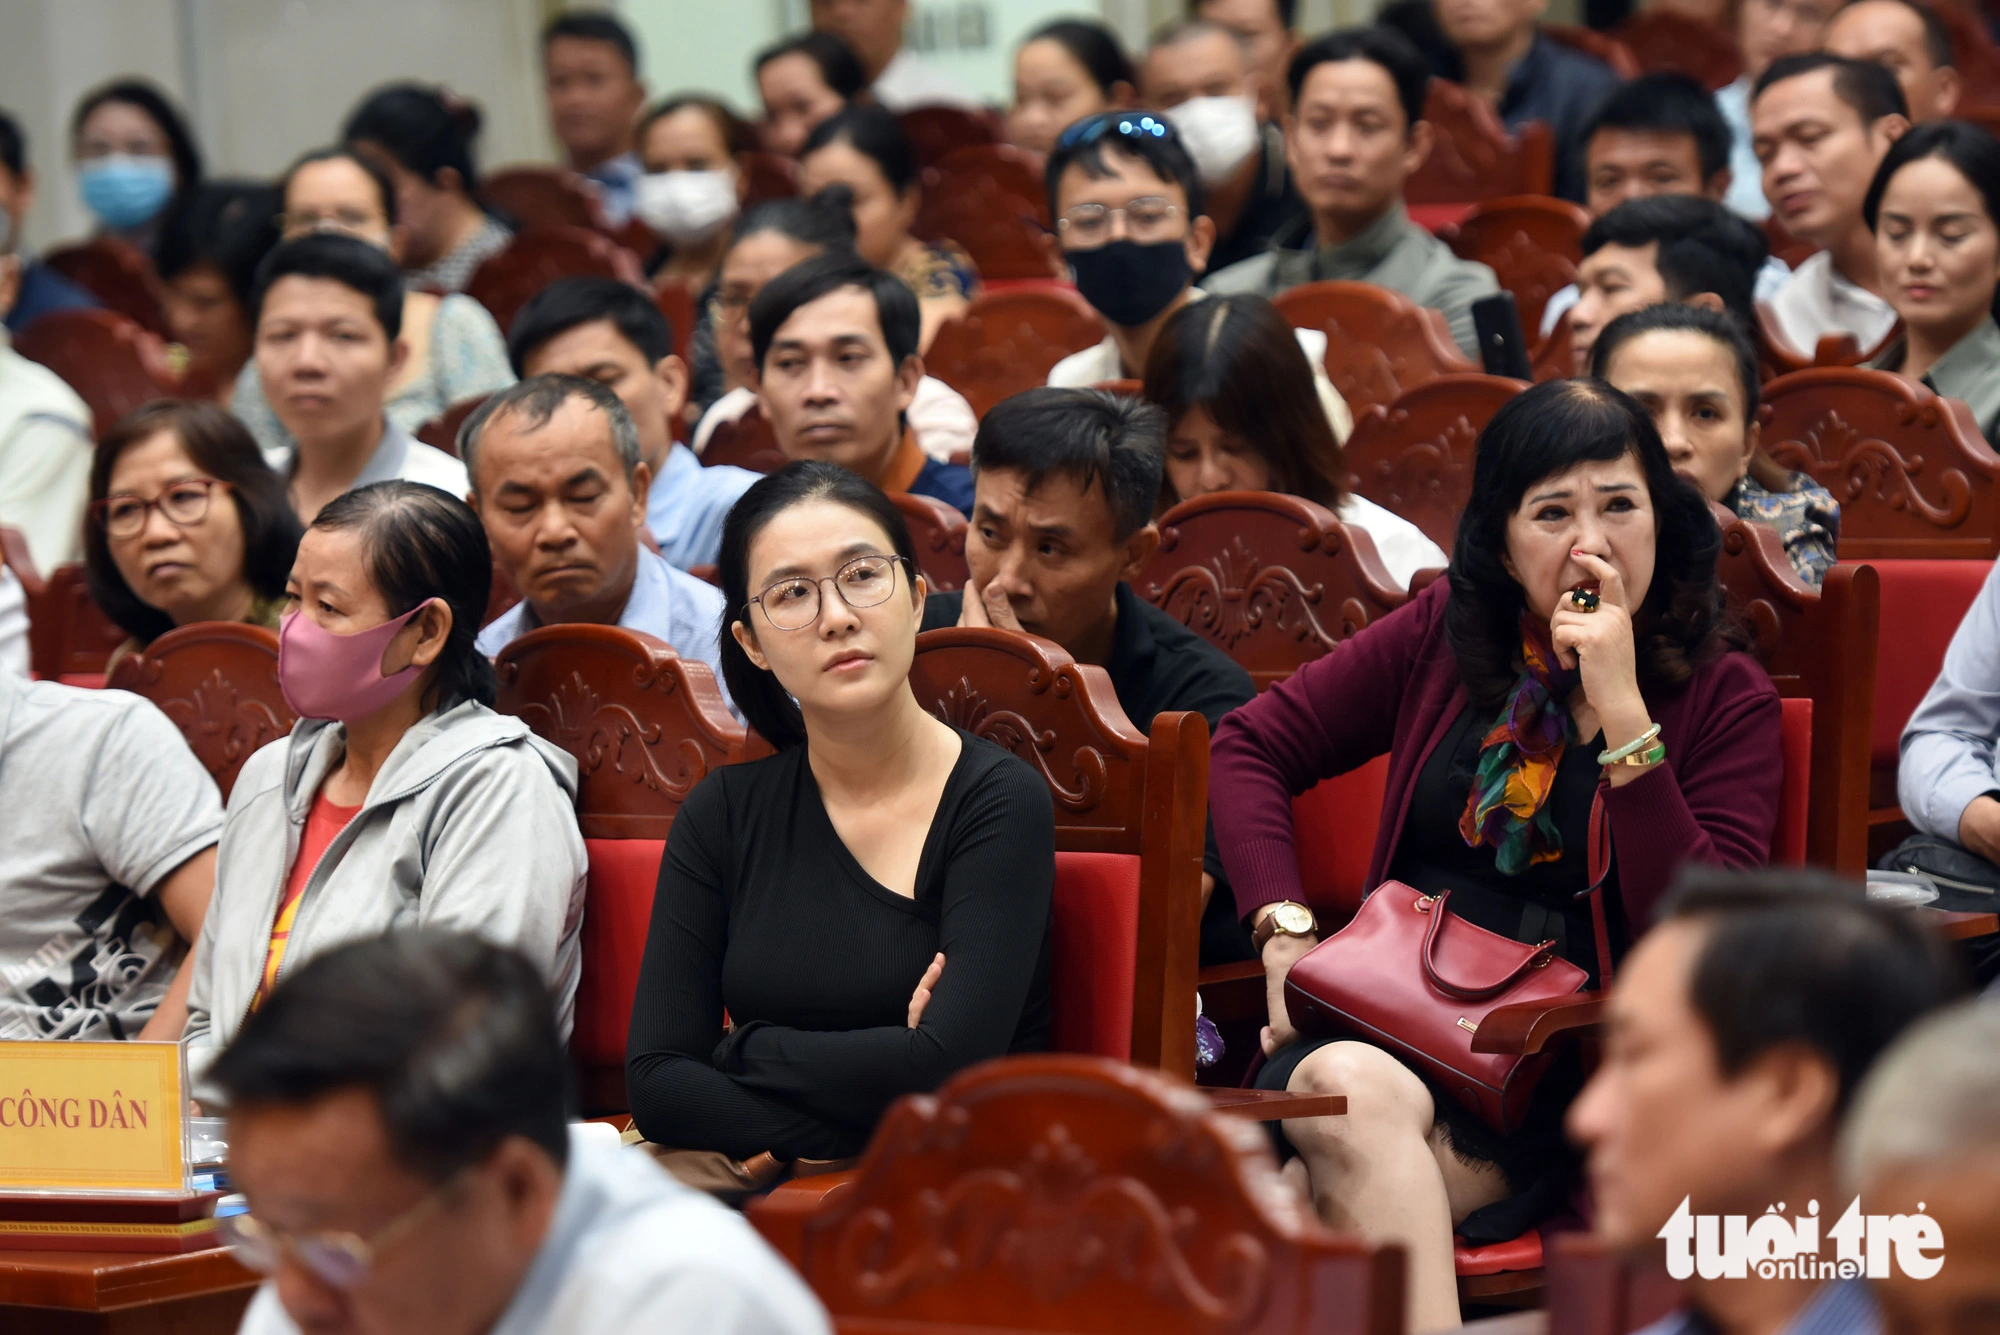 Hơn 350 người dân là khách hàng mua đất tại dự án khu dân cư dịch vụ Giang Điền A có mặt tại buổi đối thoại - Ảnh: A LỘC